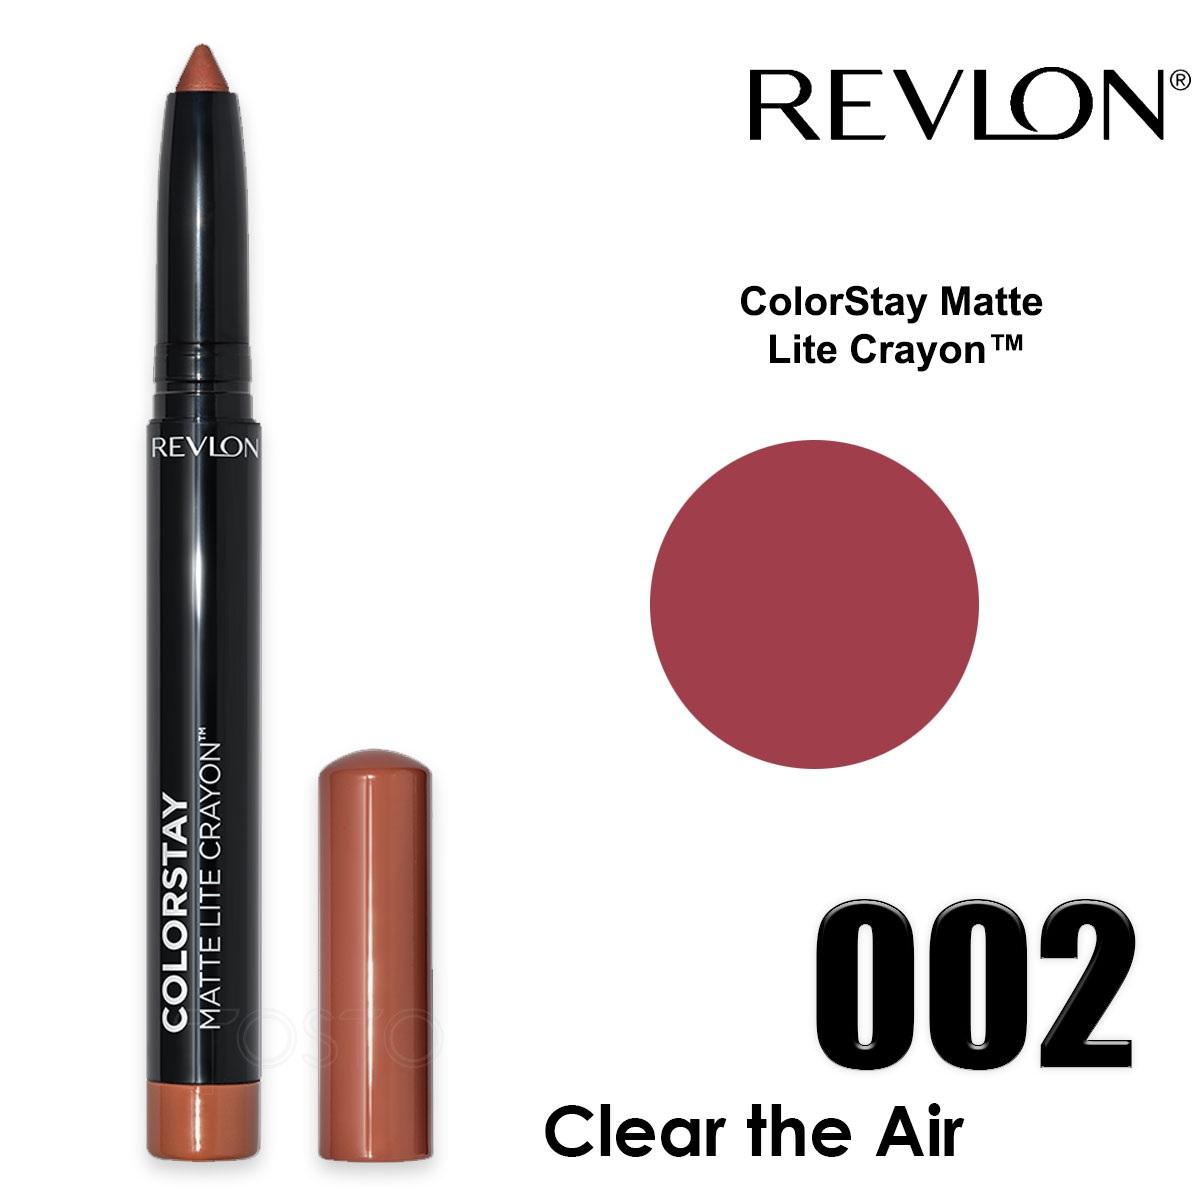 Revlon colorstay matte lite crayon clear the air